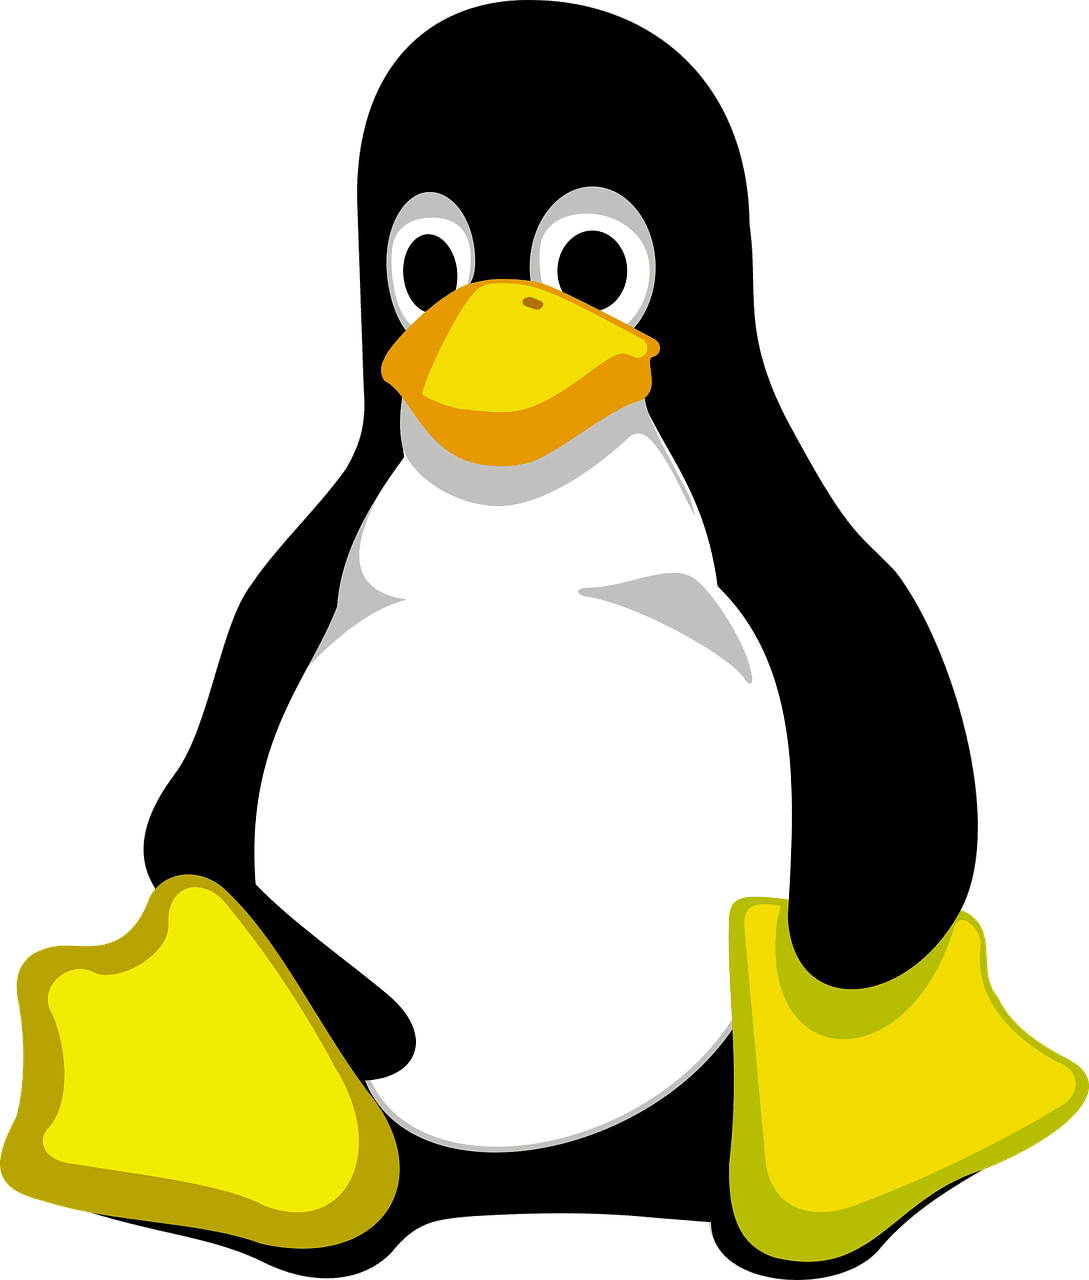 Pourquoi la mascotte de Linux est-elle un pingouin ?